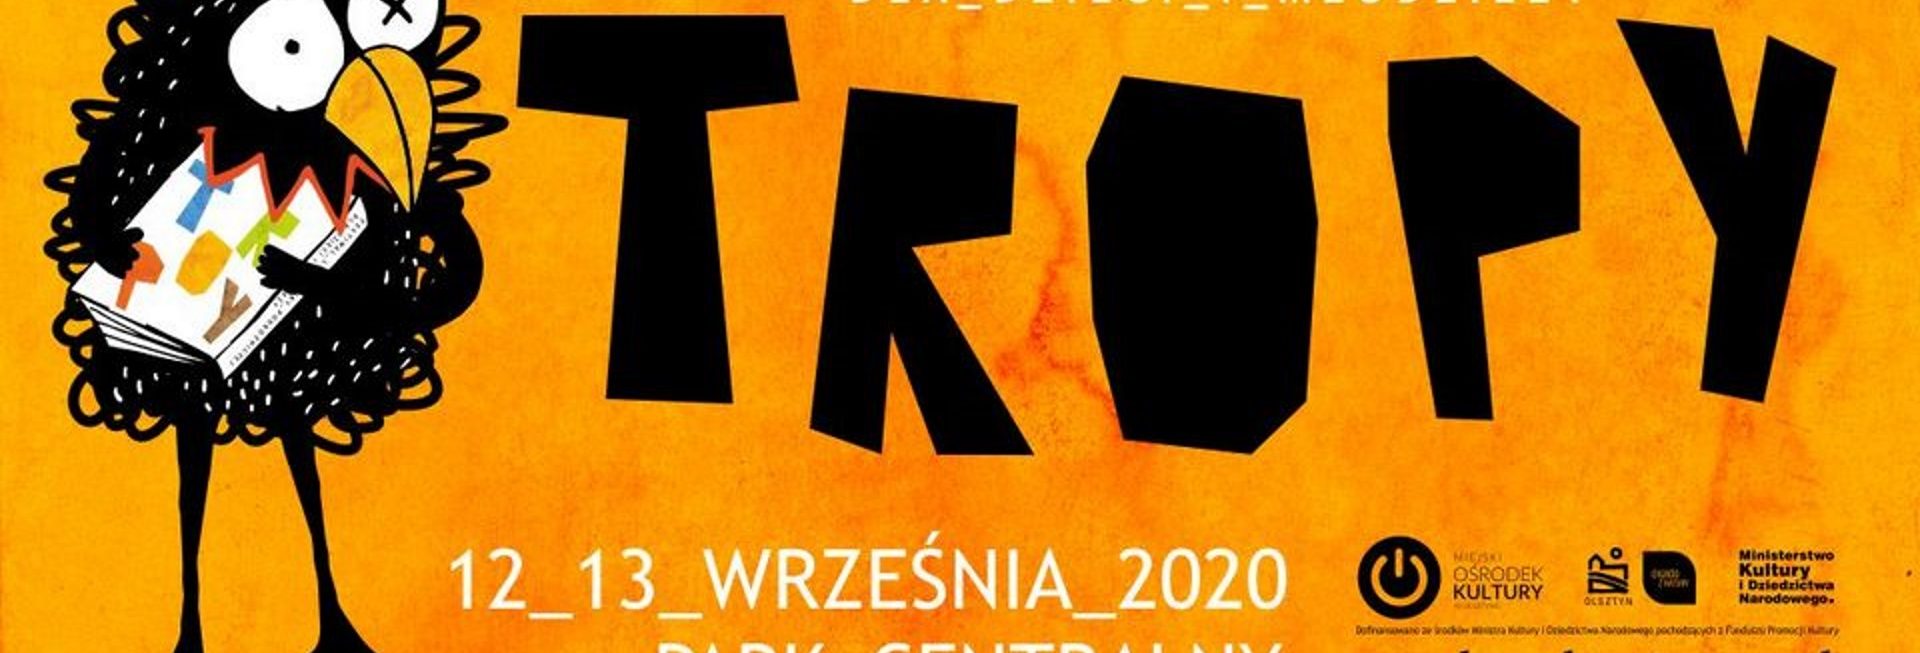 Plakat graficzny zapraszający na Festiwal Literatury Podróżniczej dla dzieci i młodzieży - Olsztyn 2020. Plakat o żółtym tle z informacją o programie festiwalu. Po lewej stronie plakatu grafika ptak kruk.  